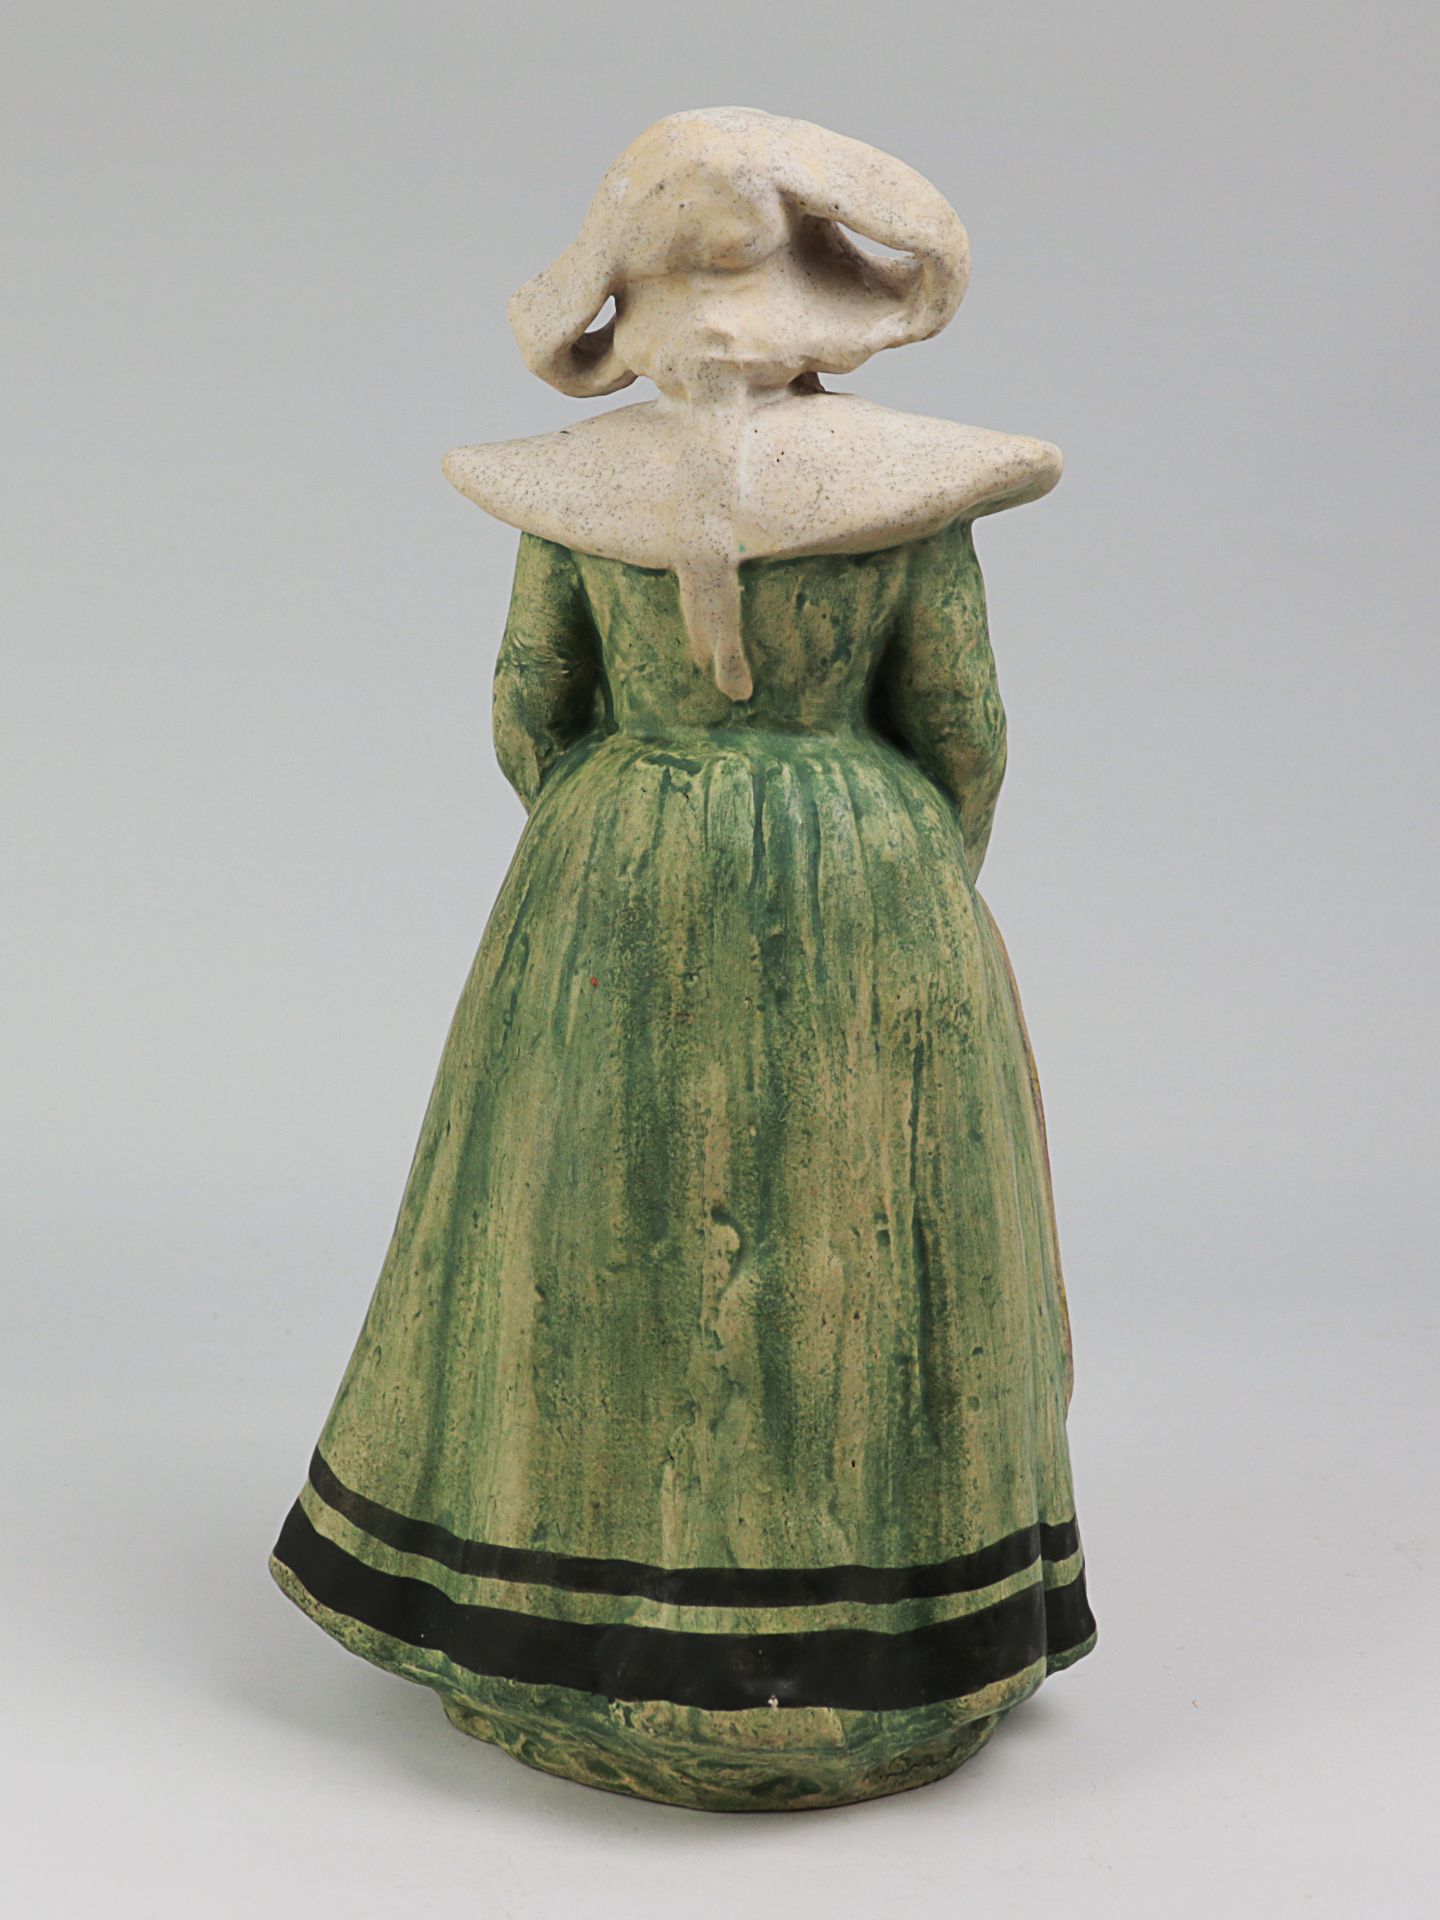 Lachenal, Edmond - Figur um 1900, Jugendstil, Frankreich, Châtillon-sous-Bagneux, Keramik, heller - Bild 2 aus 4